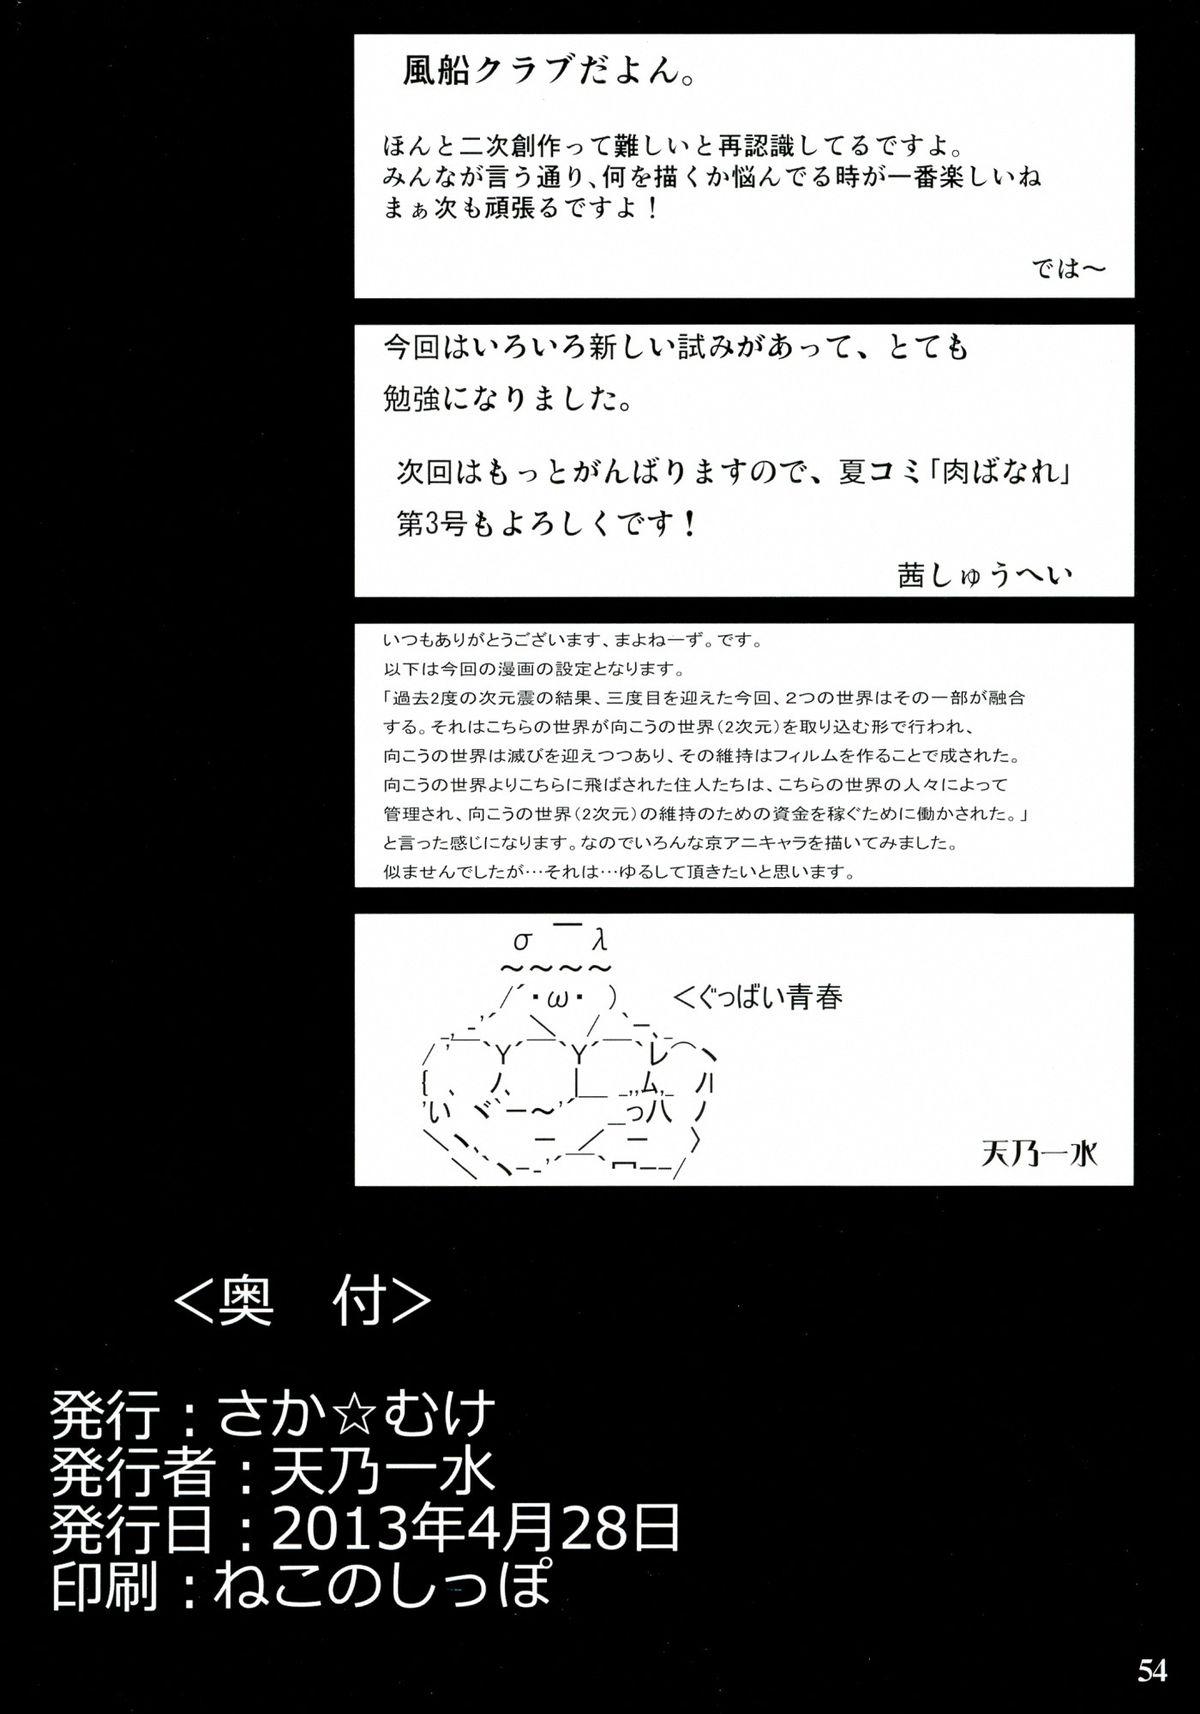 Korean Muchiuchi - Keroro gunsou Chousoku henkei gyrozetter Tamako market Psycho-pass Casado - Page 54